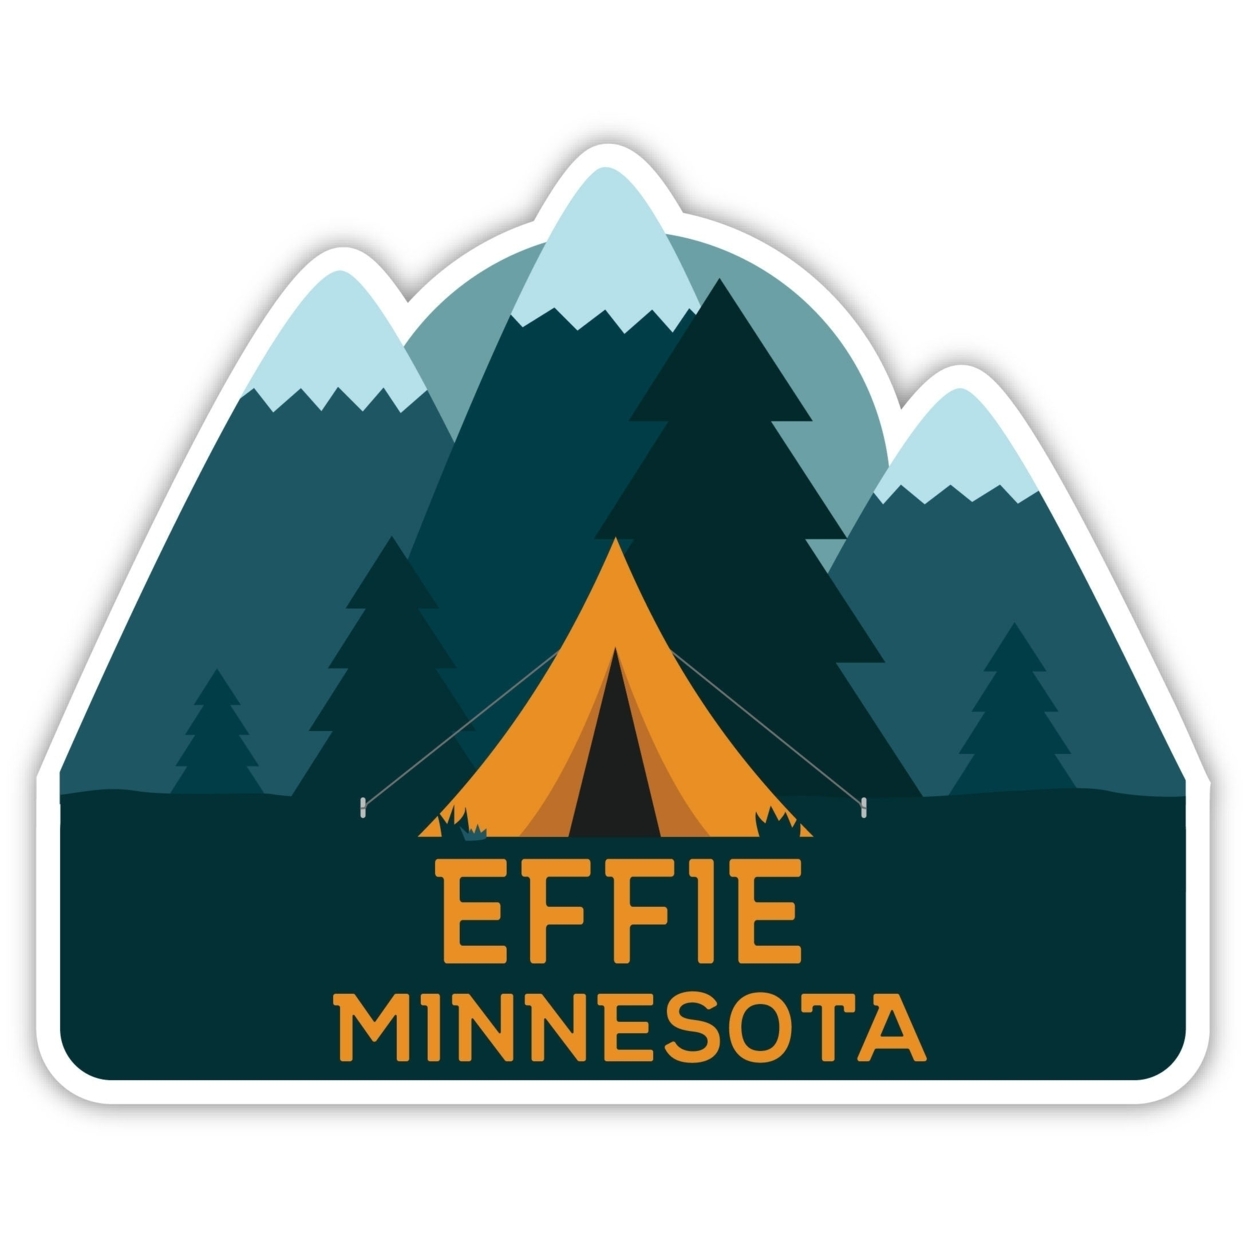 Effie Minnesota Souvenir Decorative Stickers (Choose Theme And Size) - Single Unit, 8-Inch, Tent